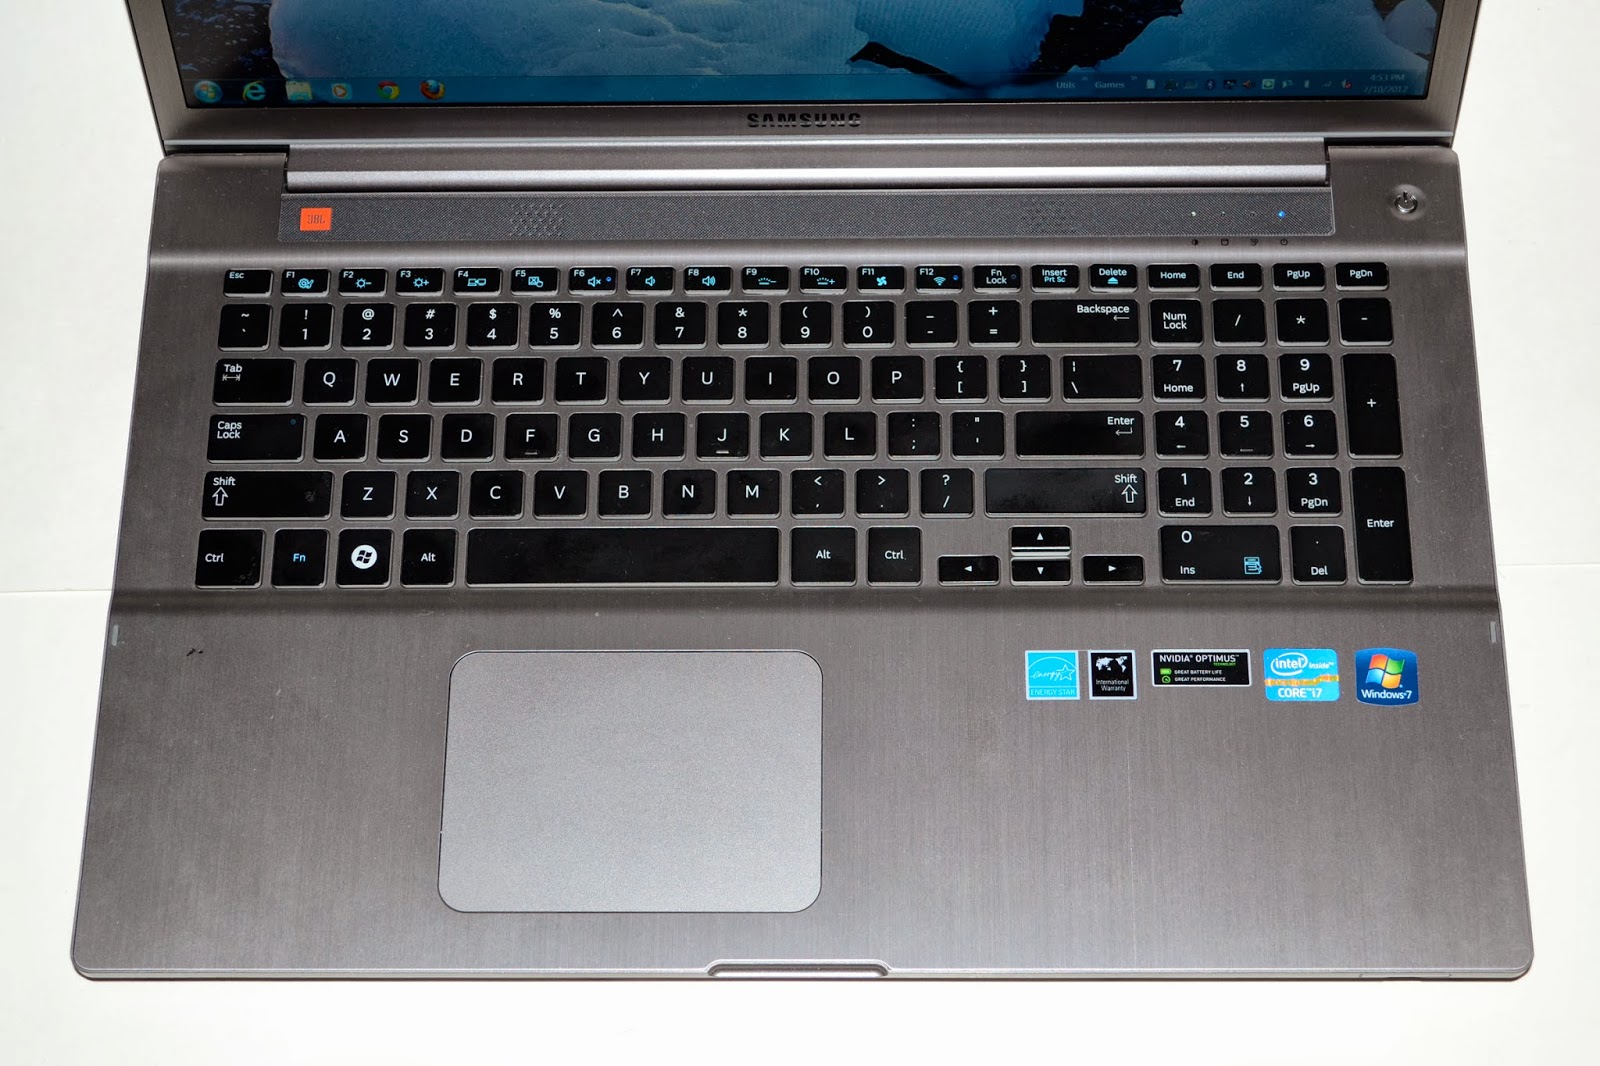 Program To Disable Laptop Keyboard